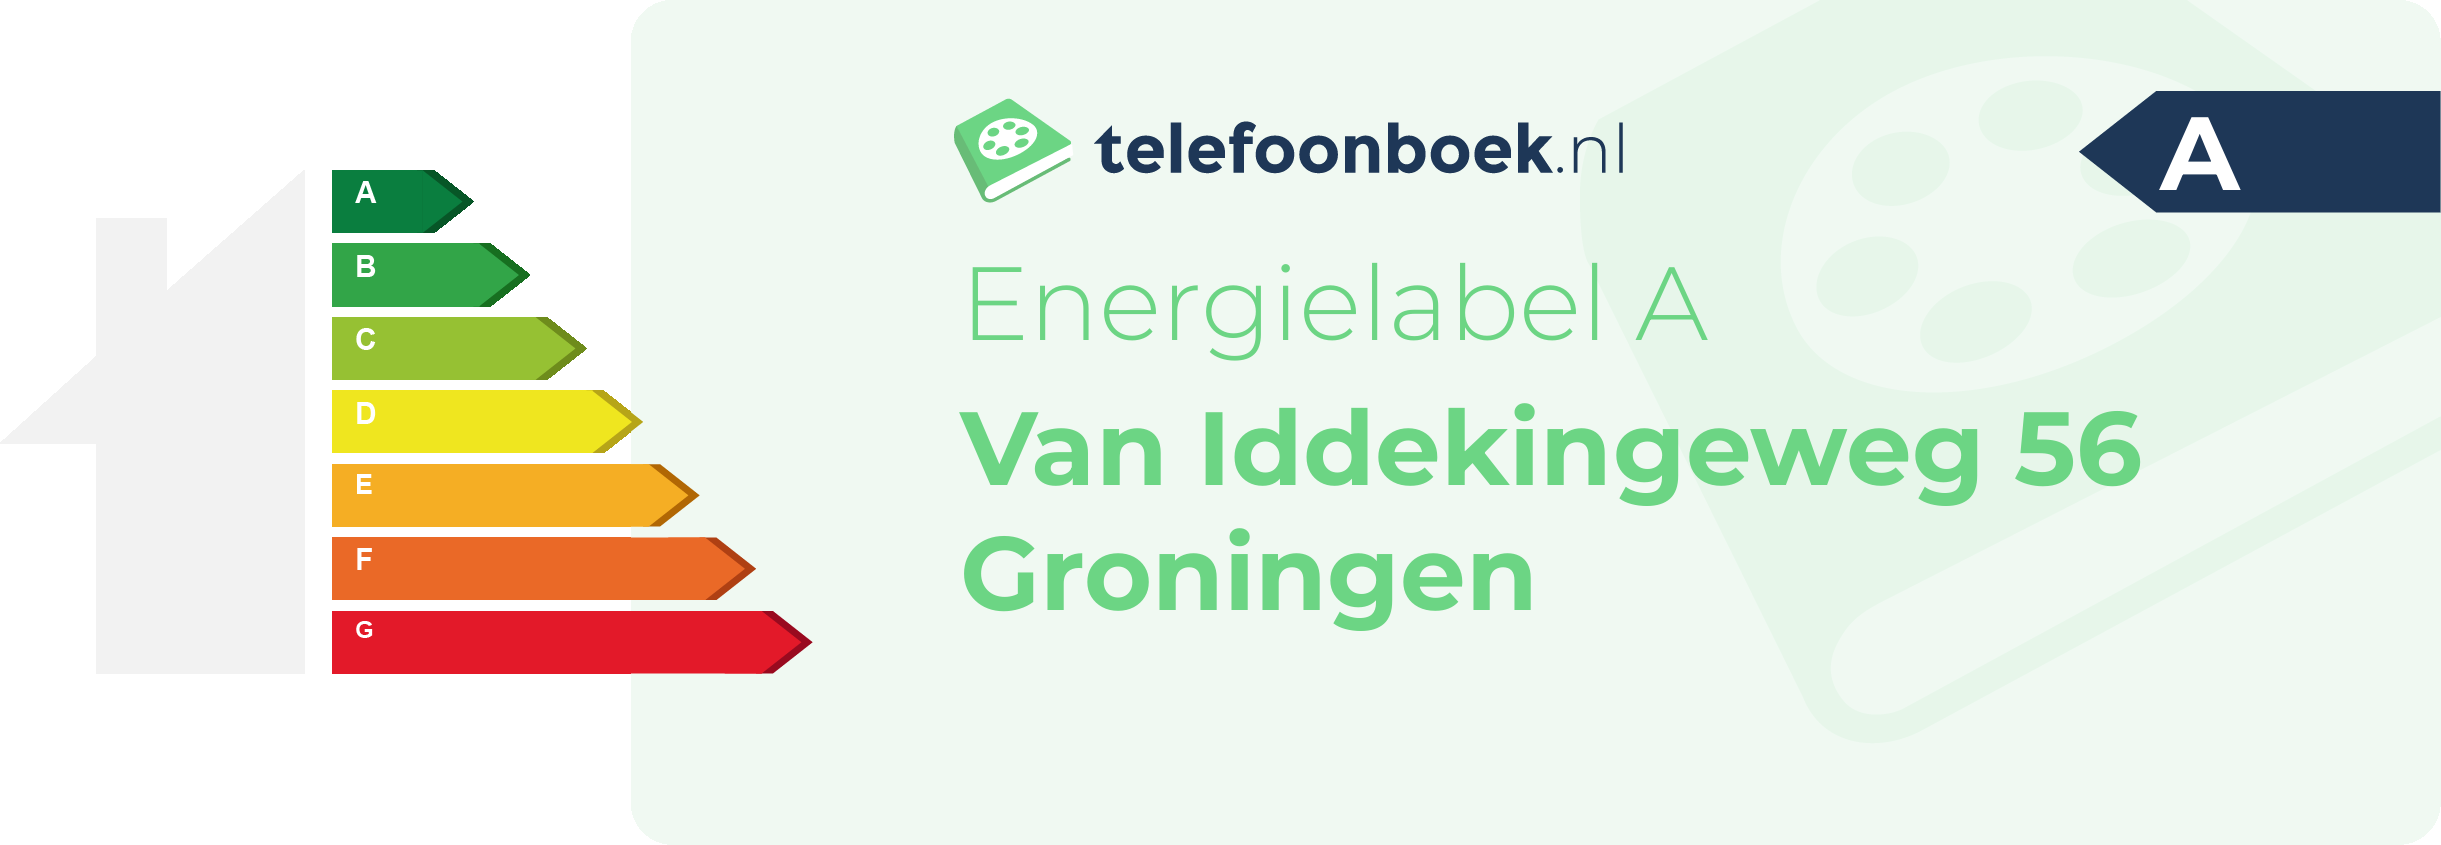 Energielabel Van Iddekingeweg 56 Groningen